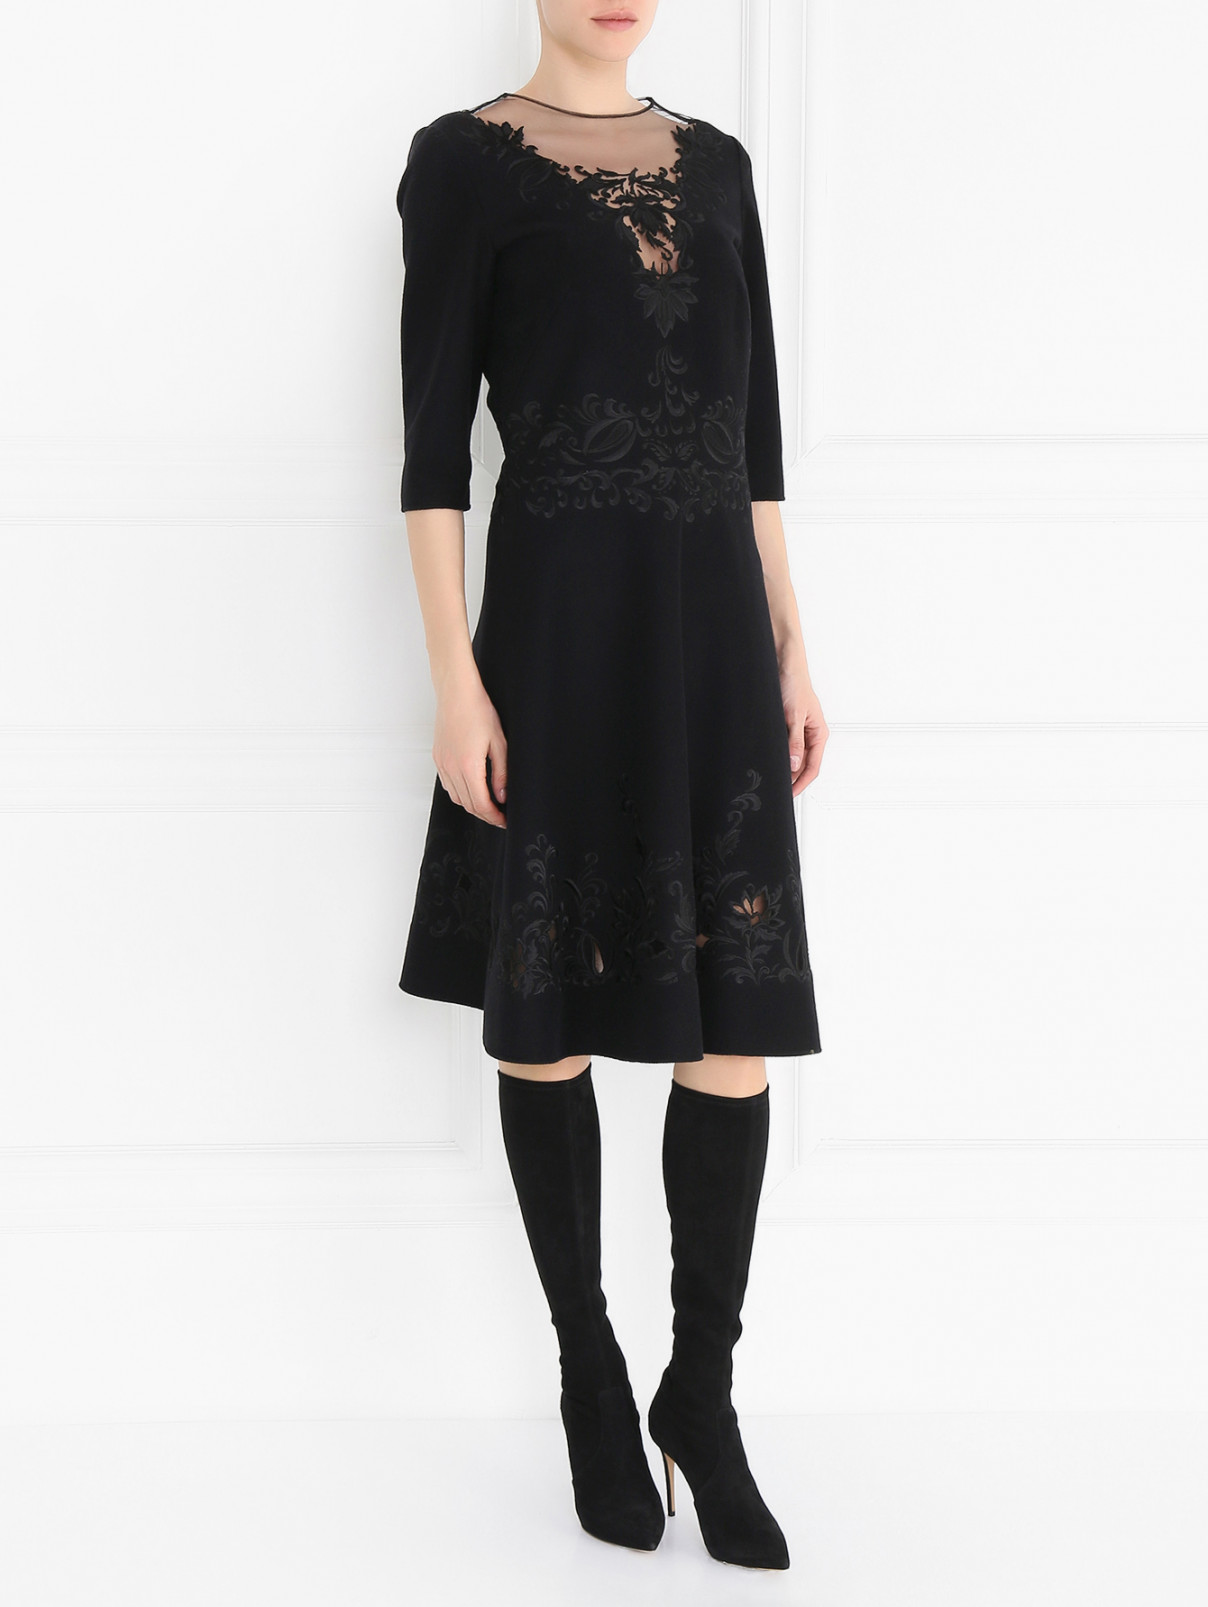 Платье из шерсти с объемной вышивкой Ermanno Scervino  –  Модель Общий вид  – Цвет:  Черный